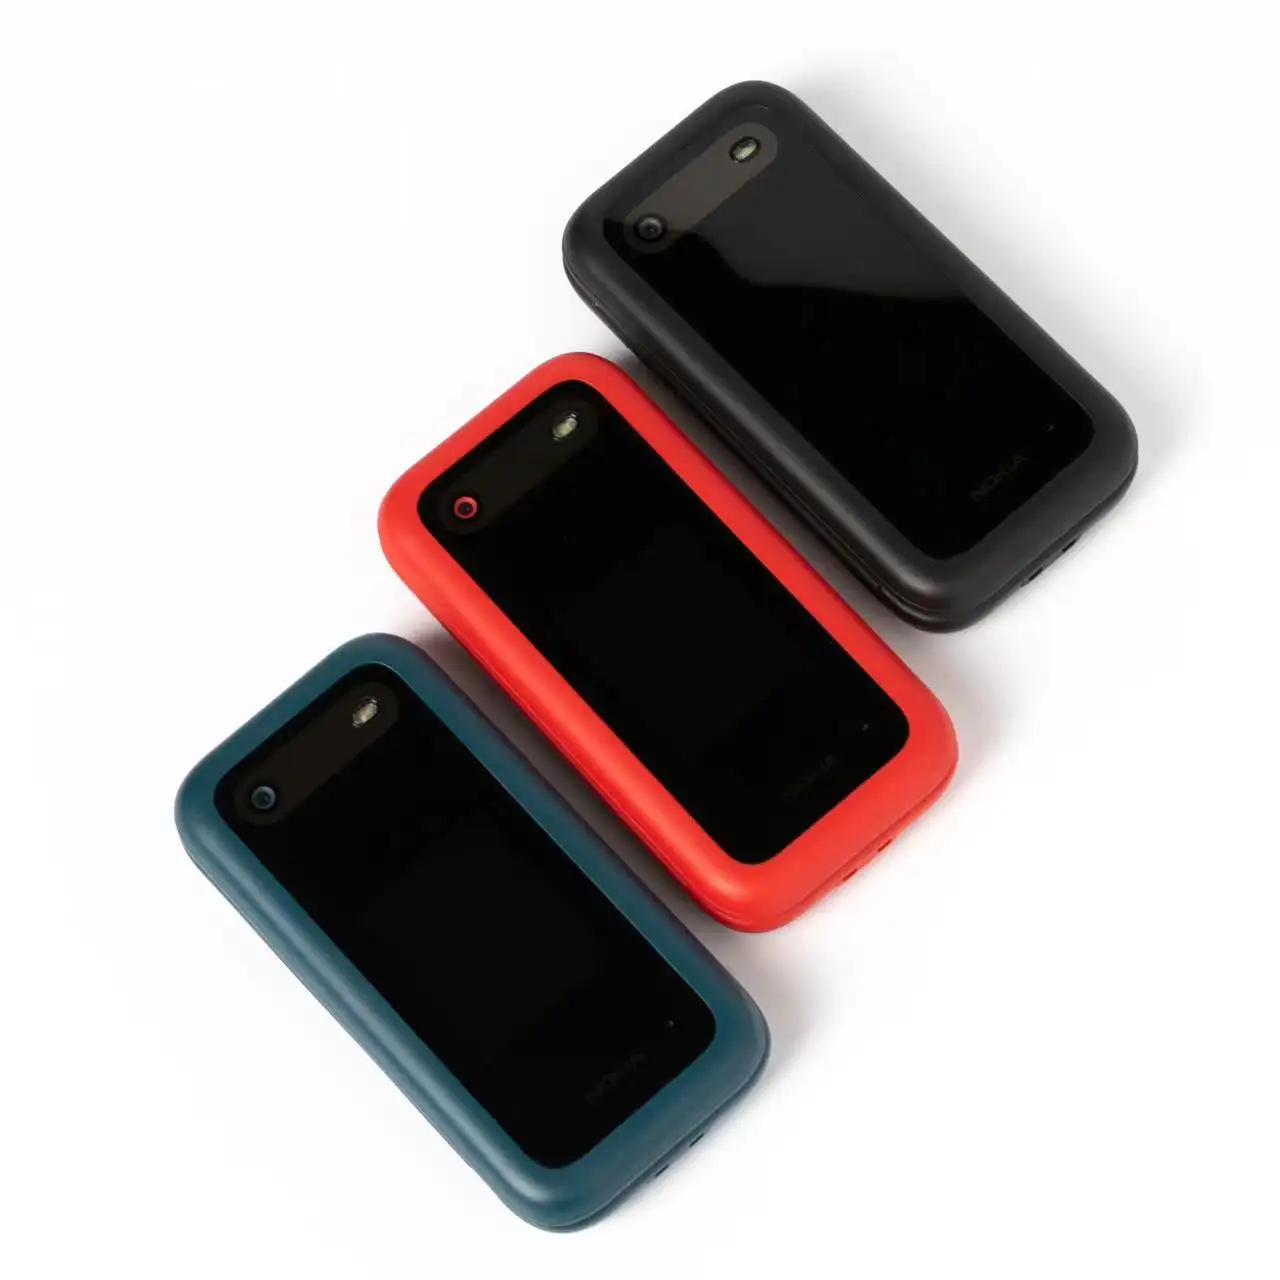 هاتف محمول مستعمل NOKIA 2660 (نسخة 2022) يدعم 4G بشريحتين يعمل كشاشة جبلية بسعر رخيص مزود بخاصية قلاب لوحة المفاتيح